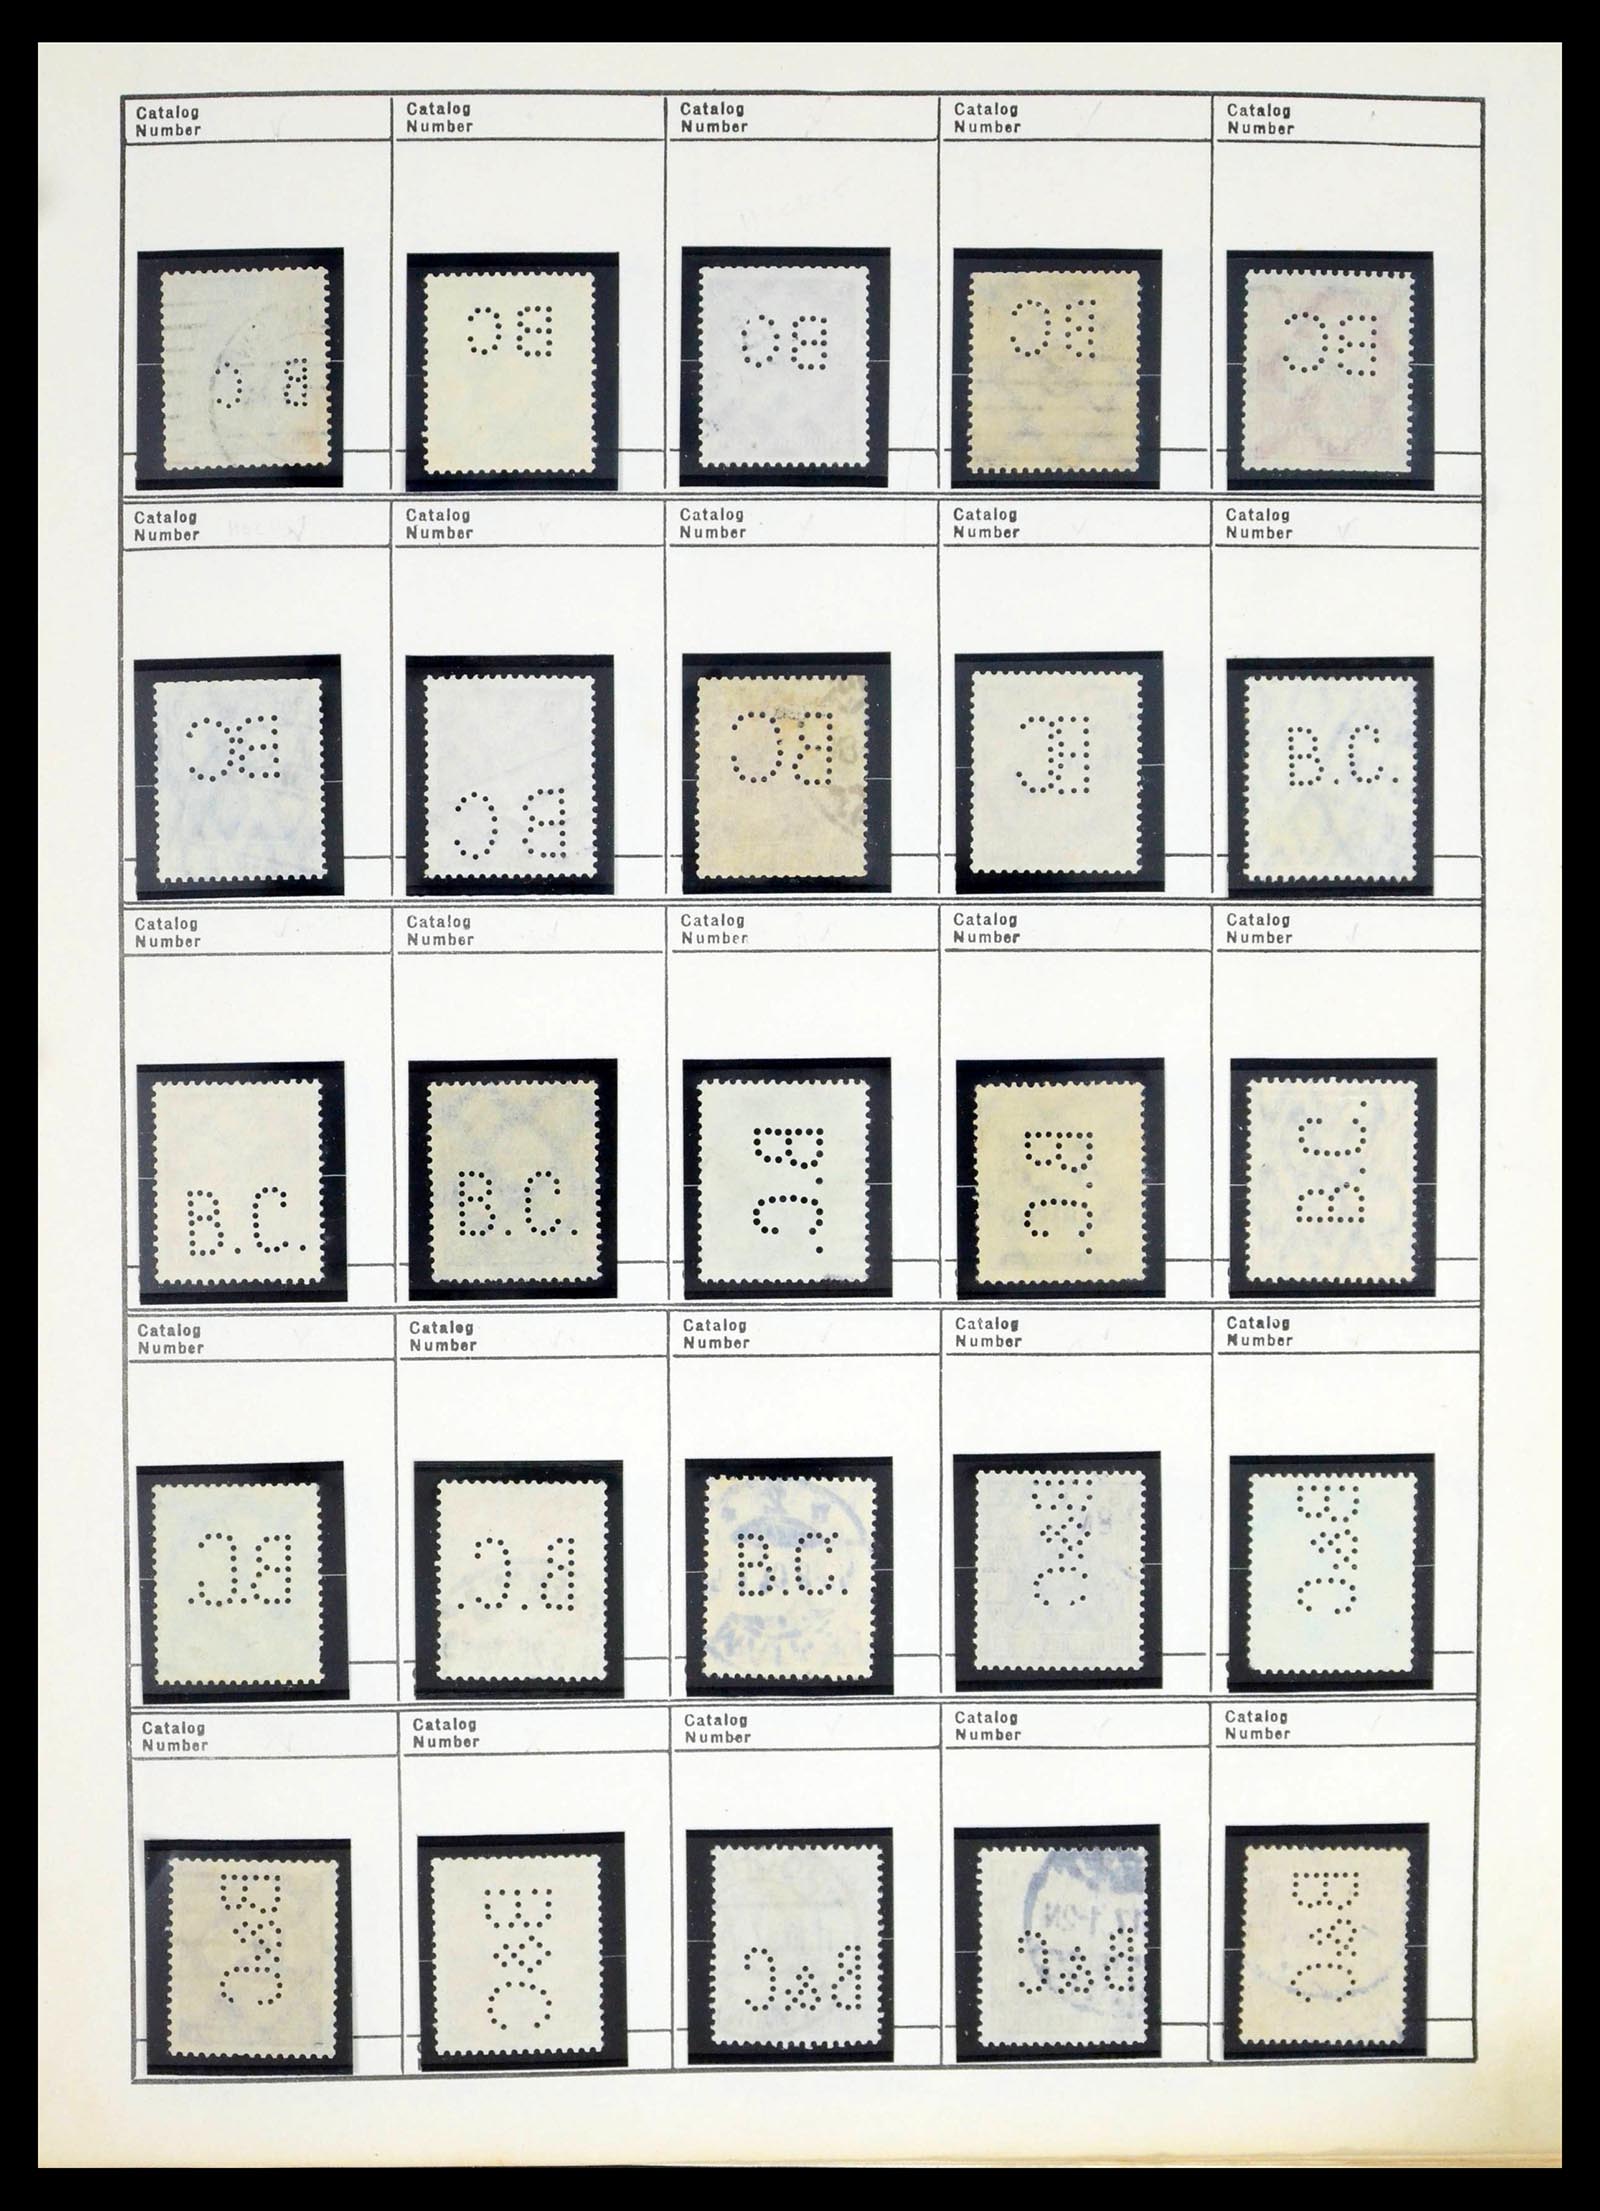 39480 0057 - Stamp collection 39480 German Reich perfins 1880-1955.